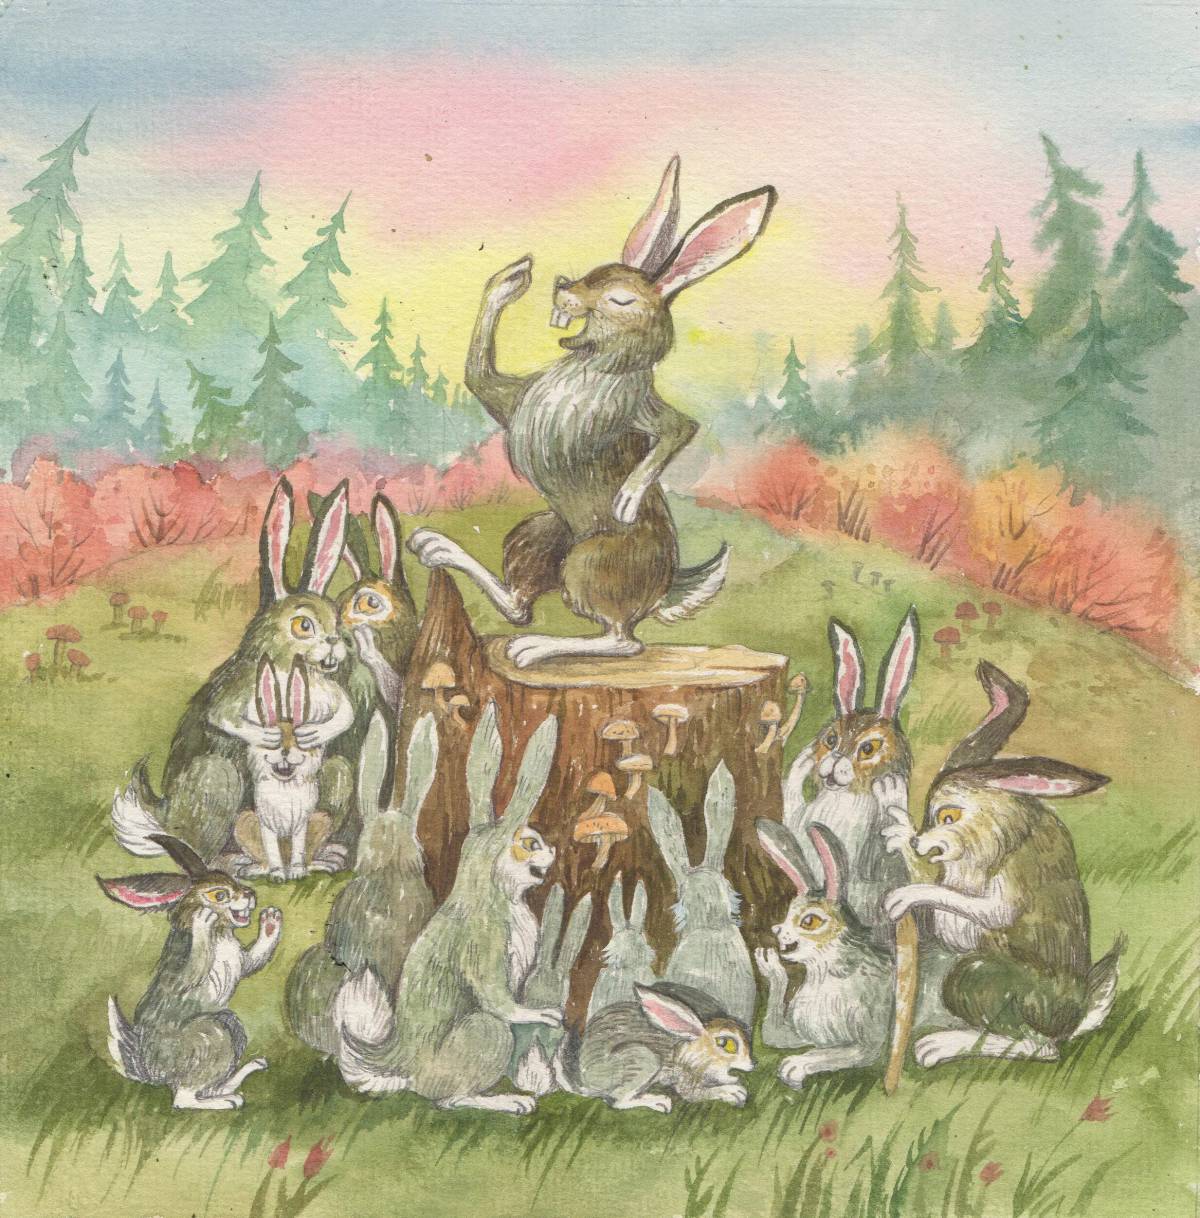 Сказка про храброго зайца длинные уши косые глаза короткий хвост #5